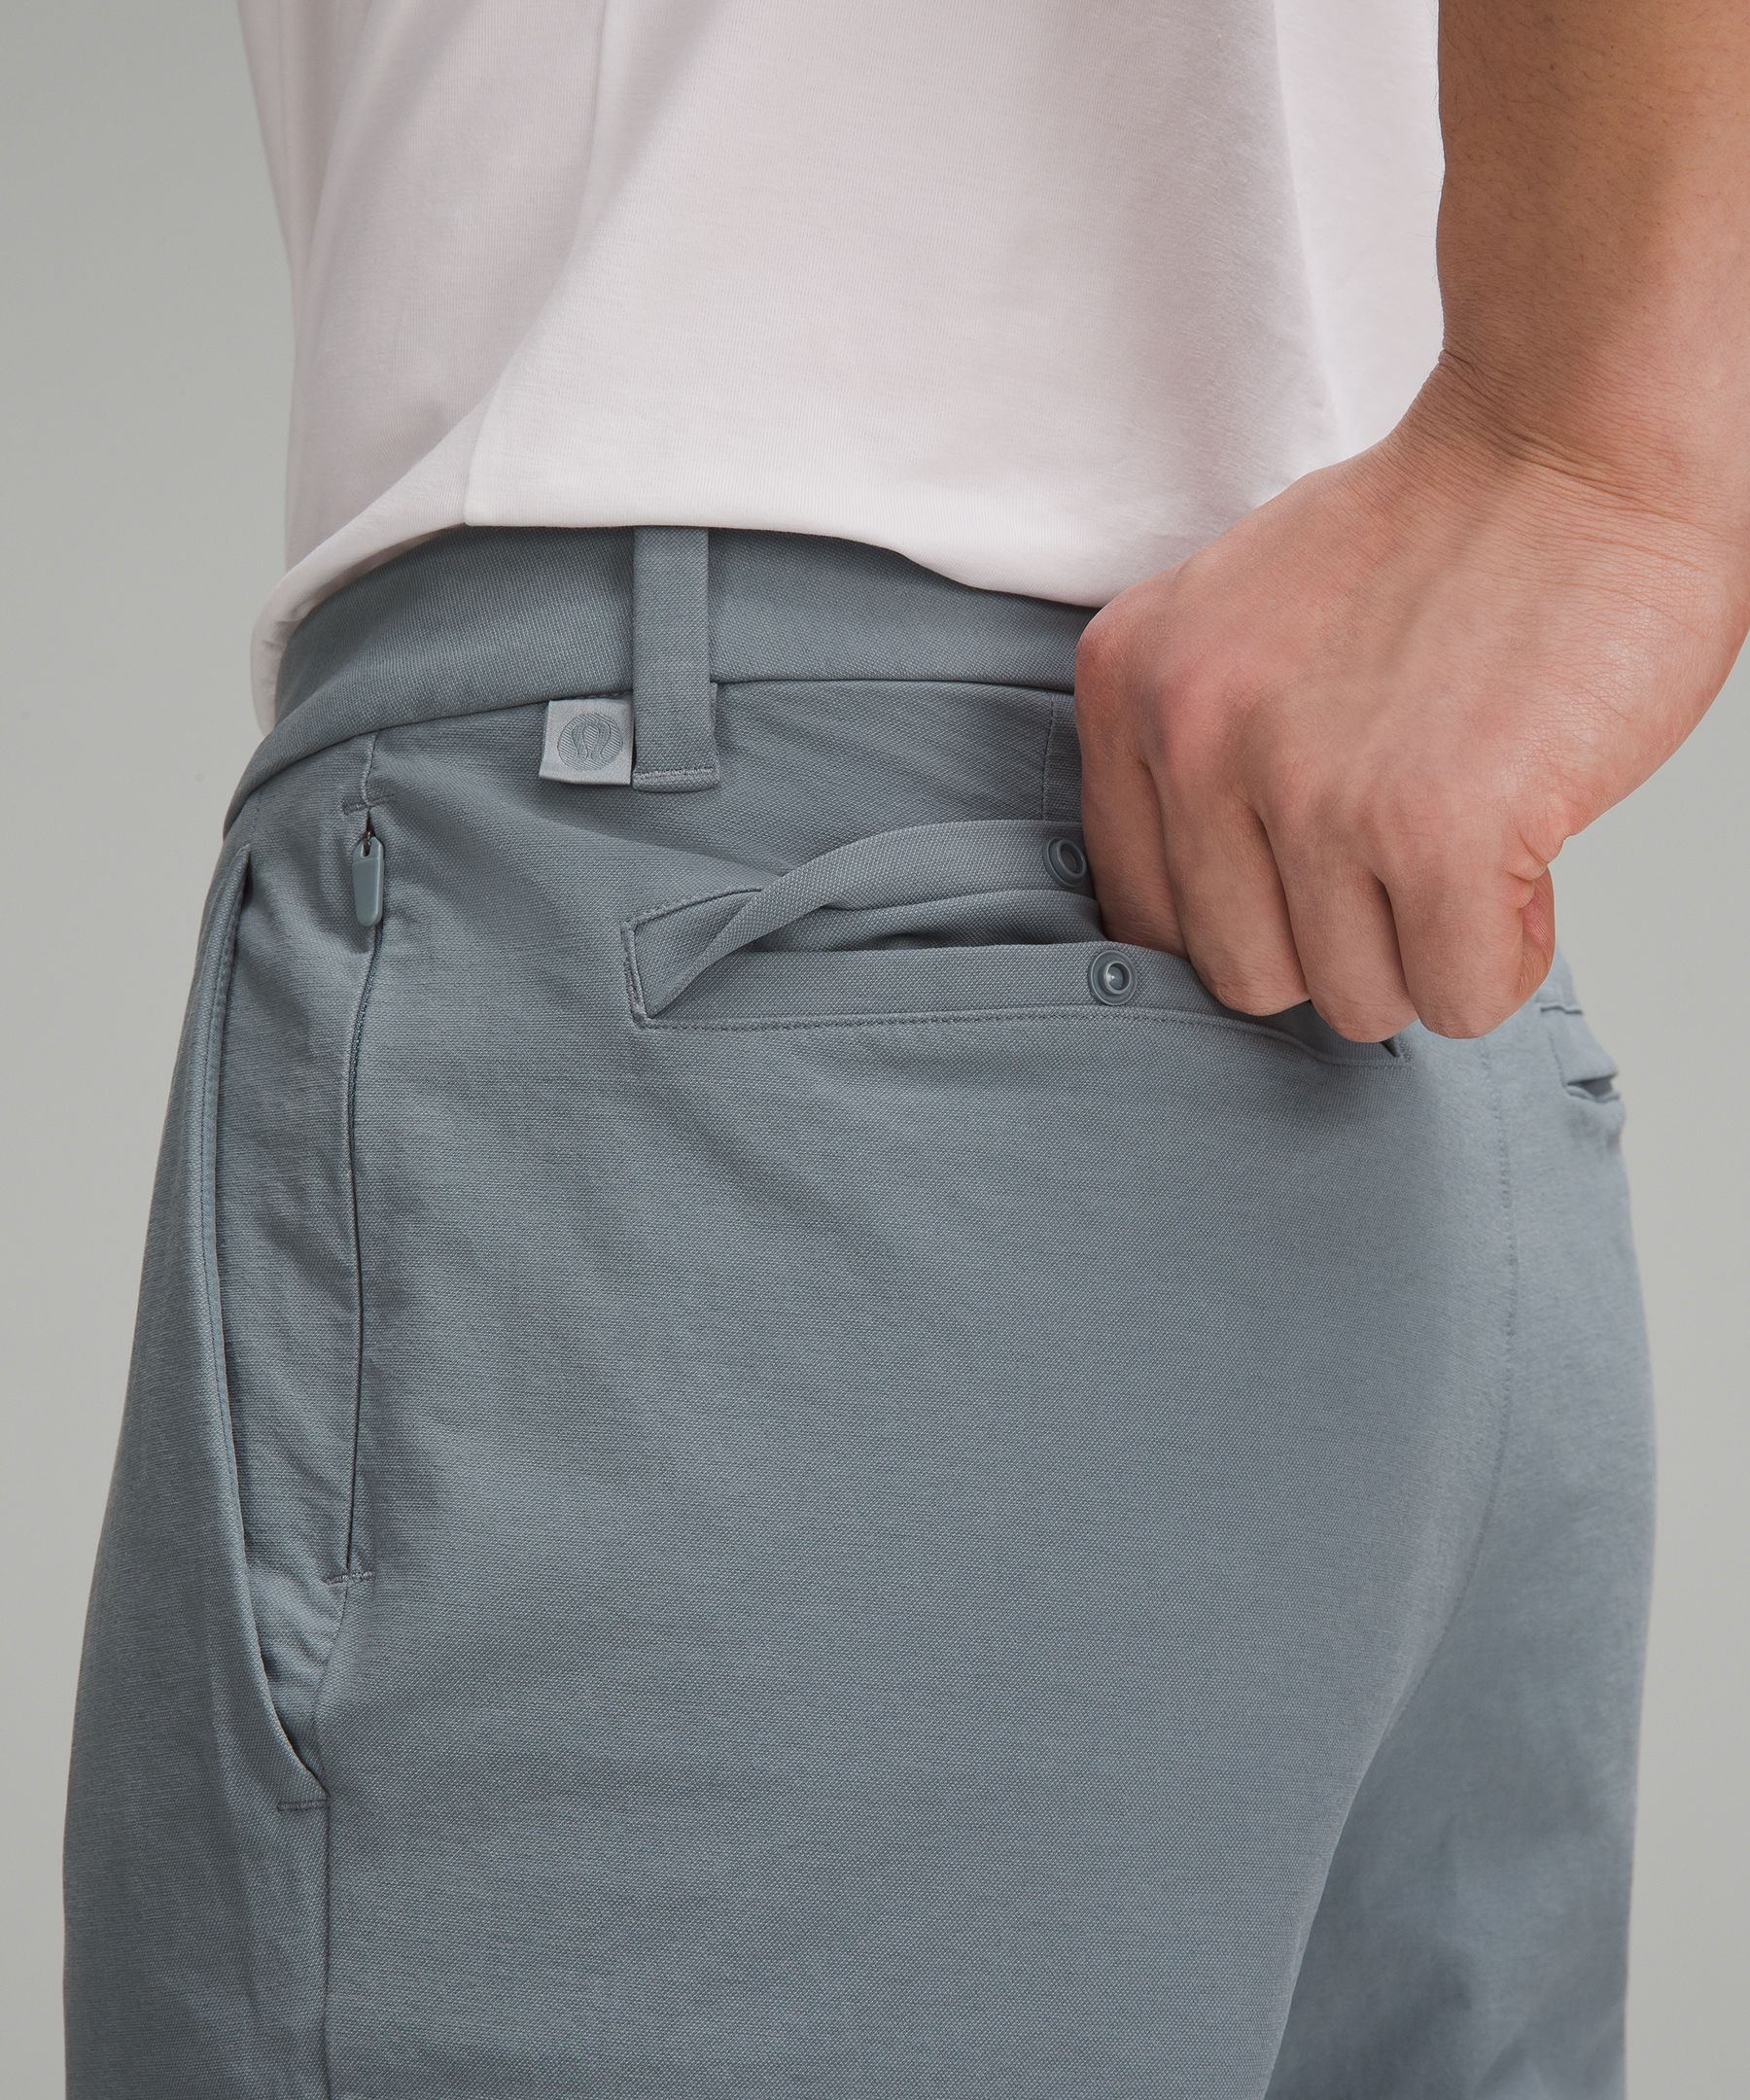 ABC Slim-Fit Trouser 30L *Stretch Cotton VersaTwill, Men's Trousers